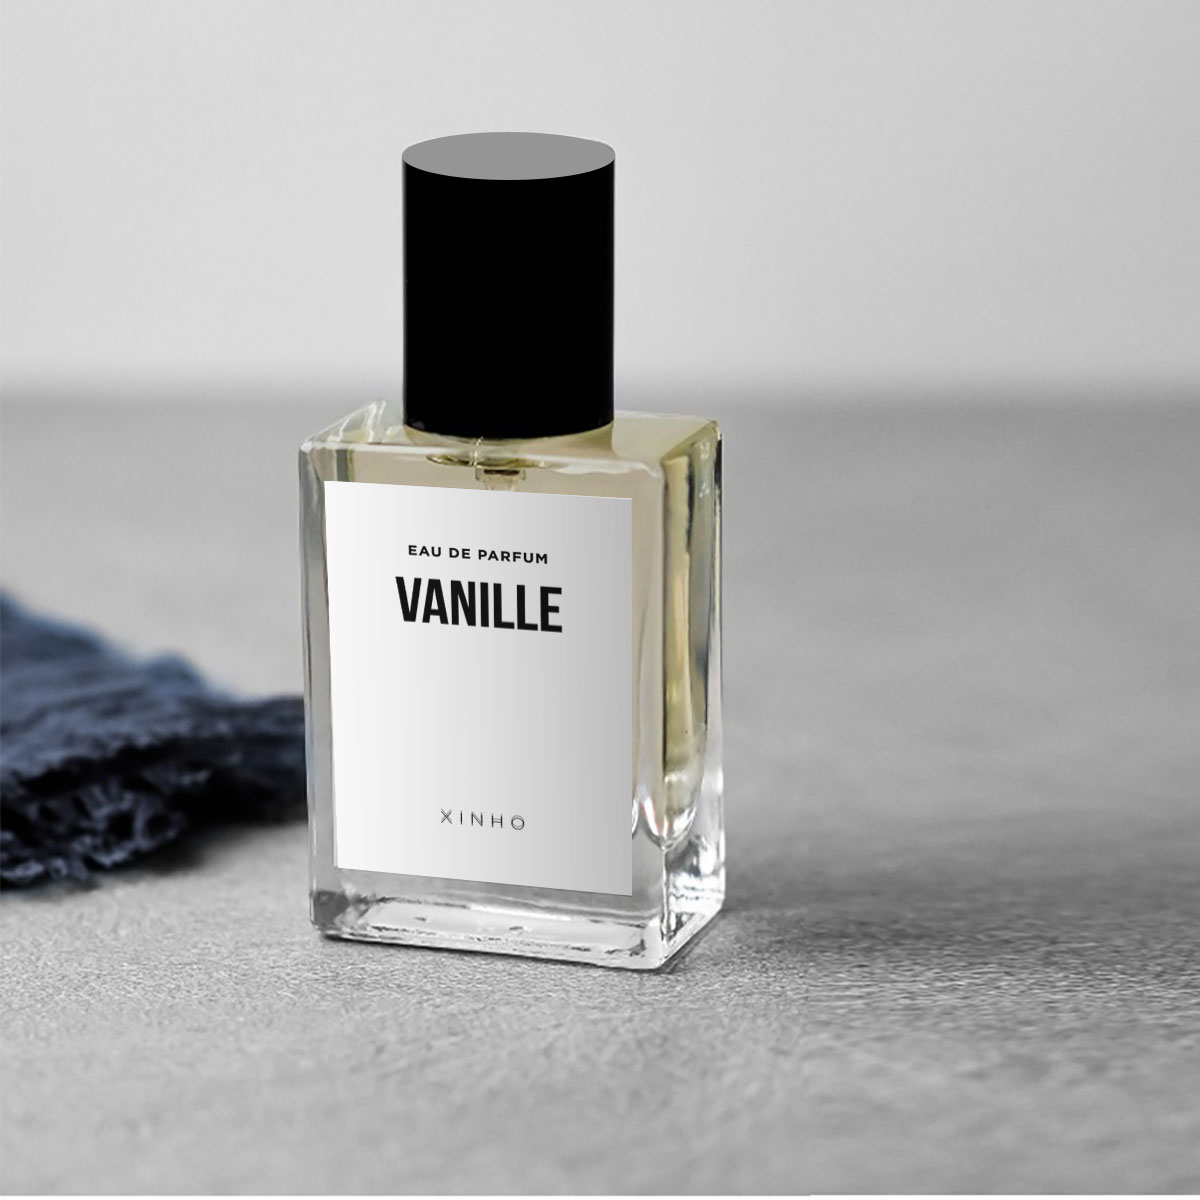 parfum yang disukai wanita parfum cowok yang disukai banyak wanita nama parfum pria yang disukai wanita parfum laki-laki yang disukai wanita aroma parfum pria yang disukai banyak wanita